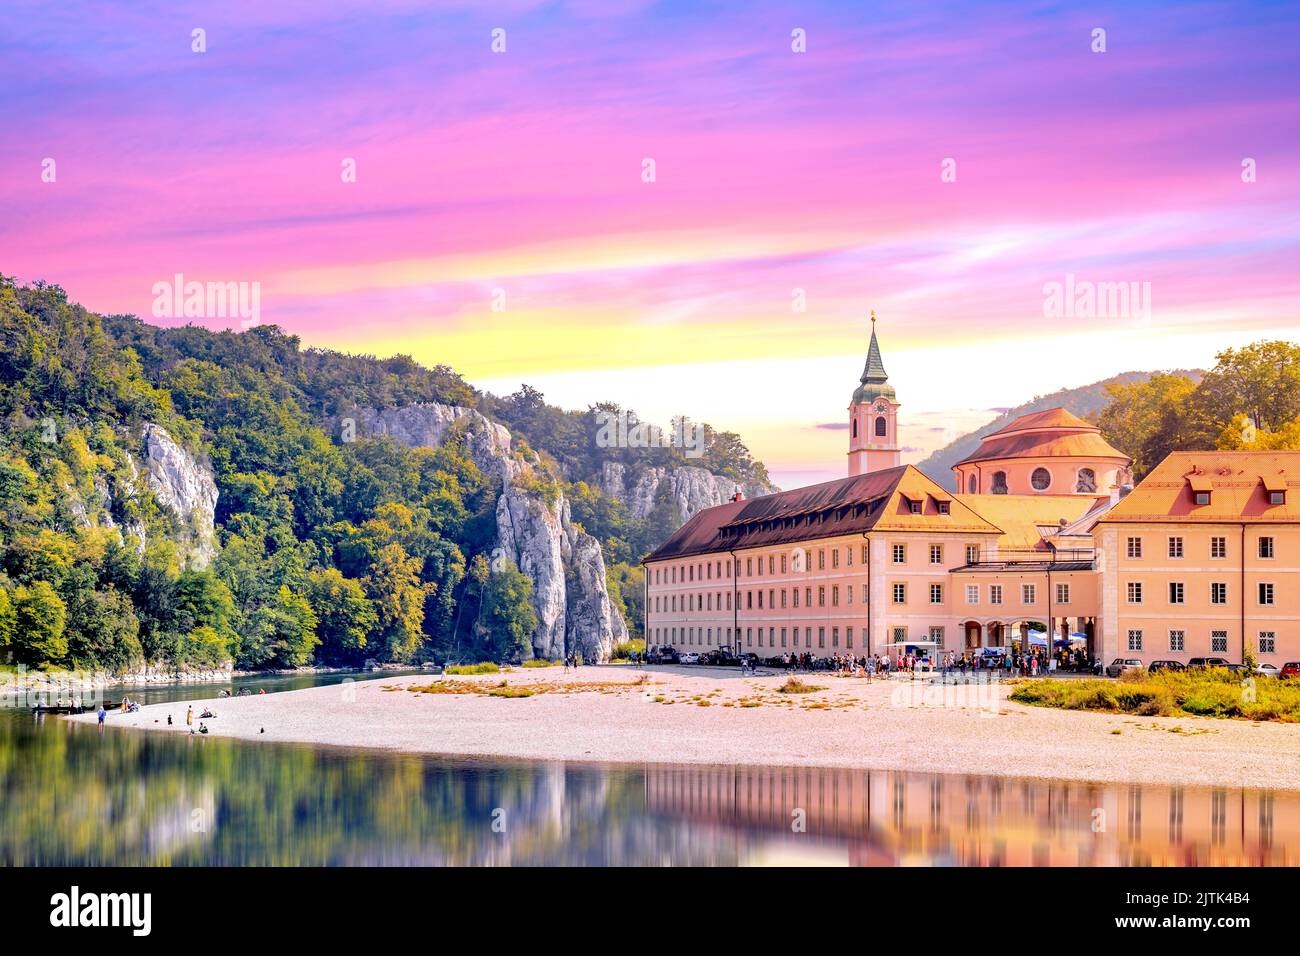 Monastery Weltenburg, Danube, Kelheim, Bavaria, germany Stock Photo